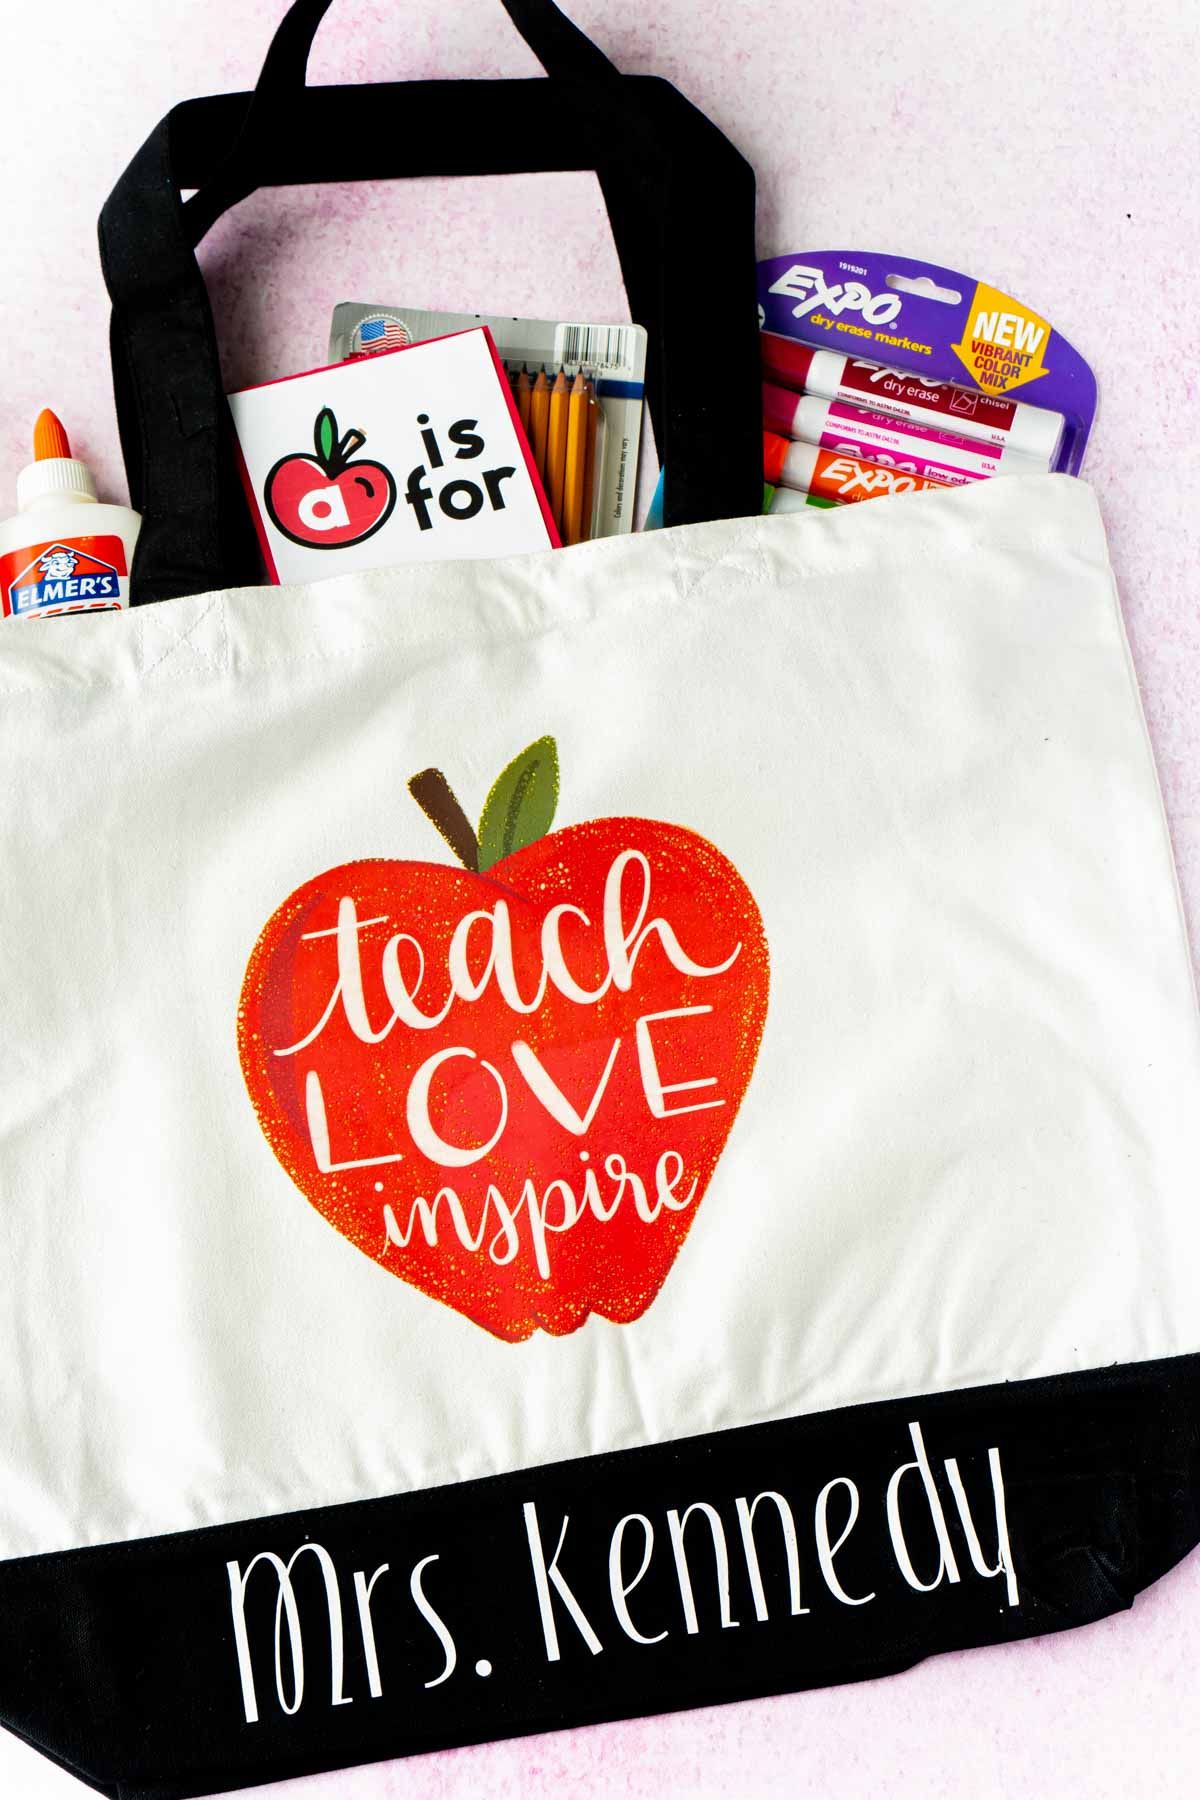 Una bossa de mà amb una poma i material escolar que sobresurt